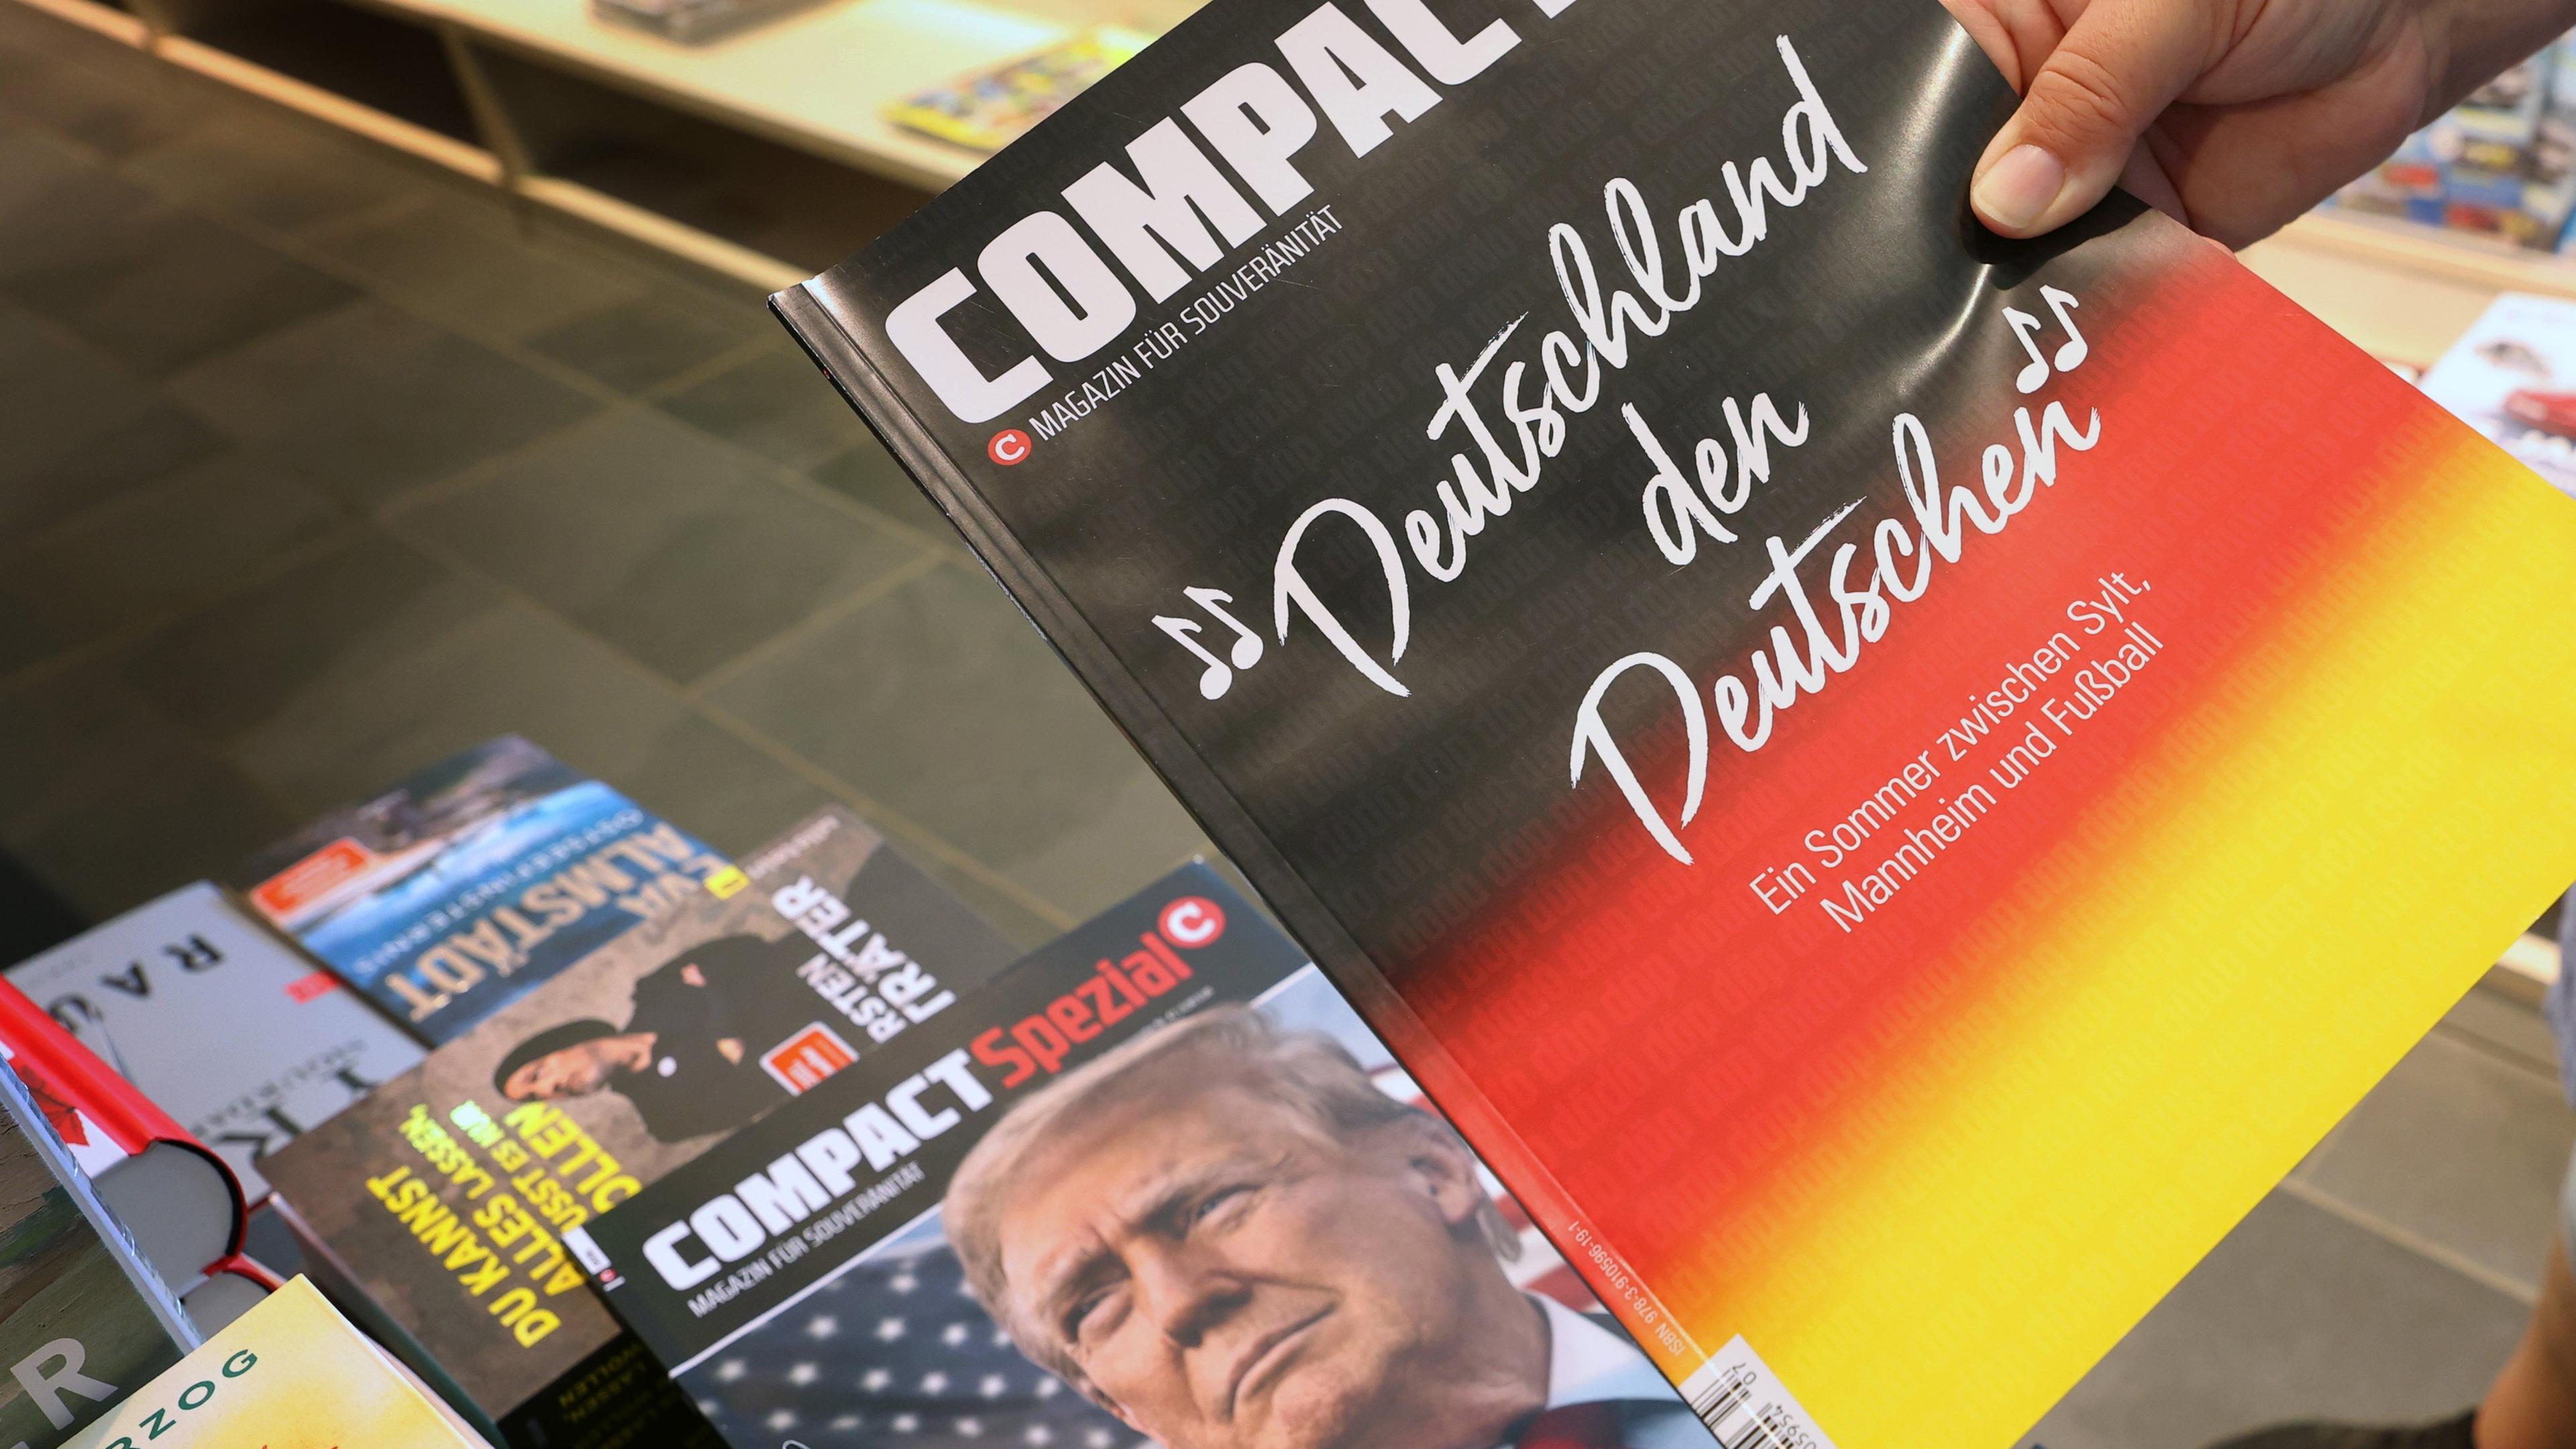 Bayern, Kempten: Eine Mitarbeiterin einer Bahnhofsbuchhandlung hält eine Ausgabe des Magazins "Compact", um es danach aus dem Sortiment zu nehmen.